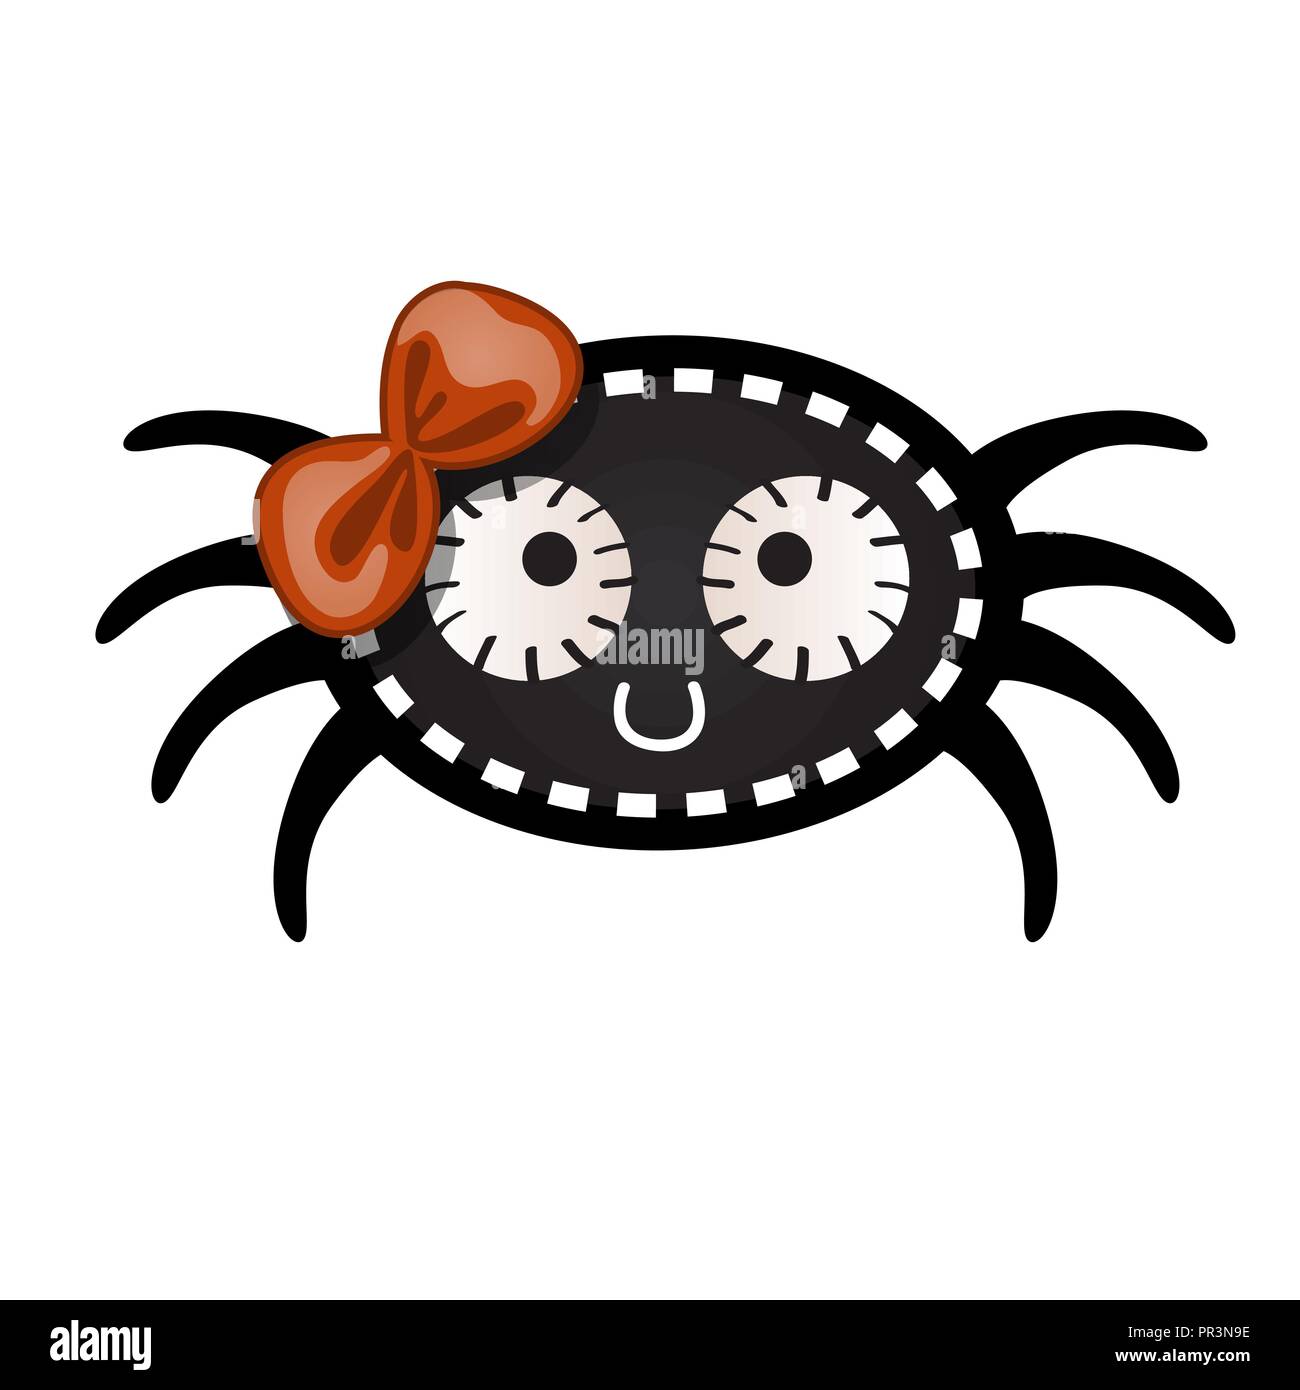 funny tarantula cartoon